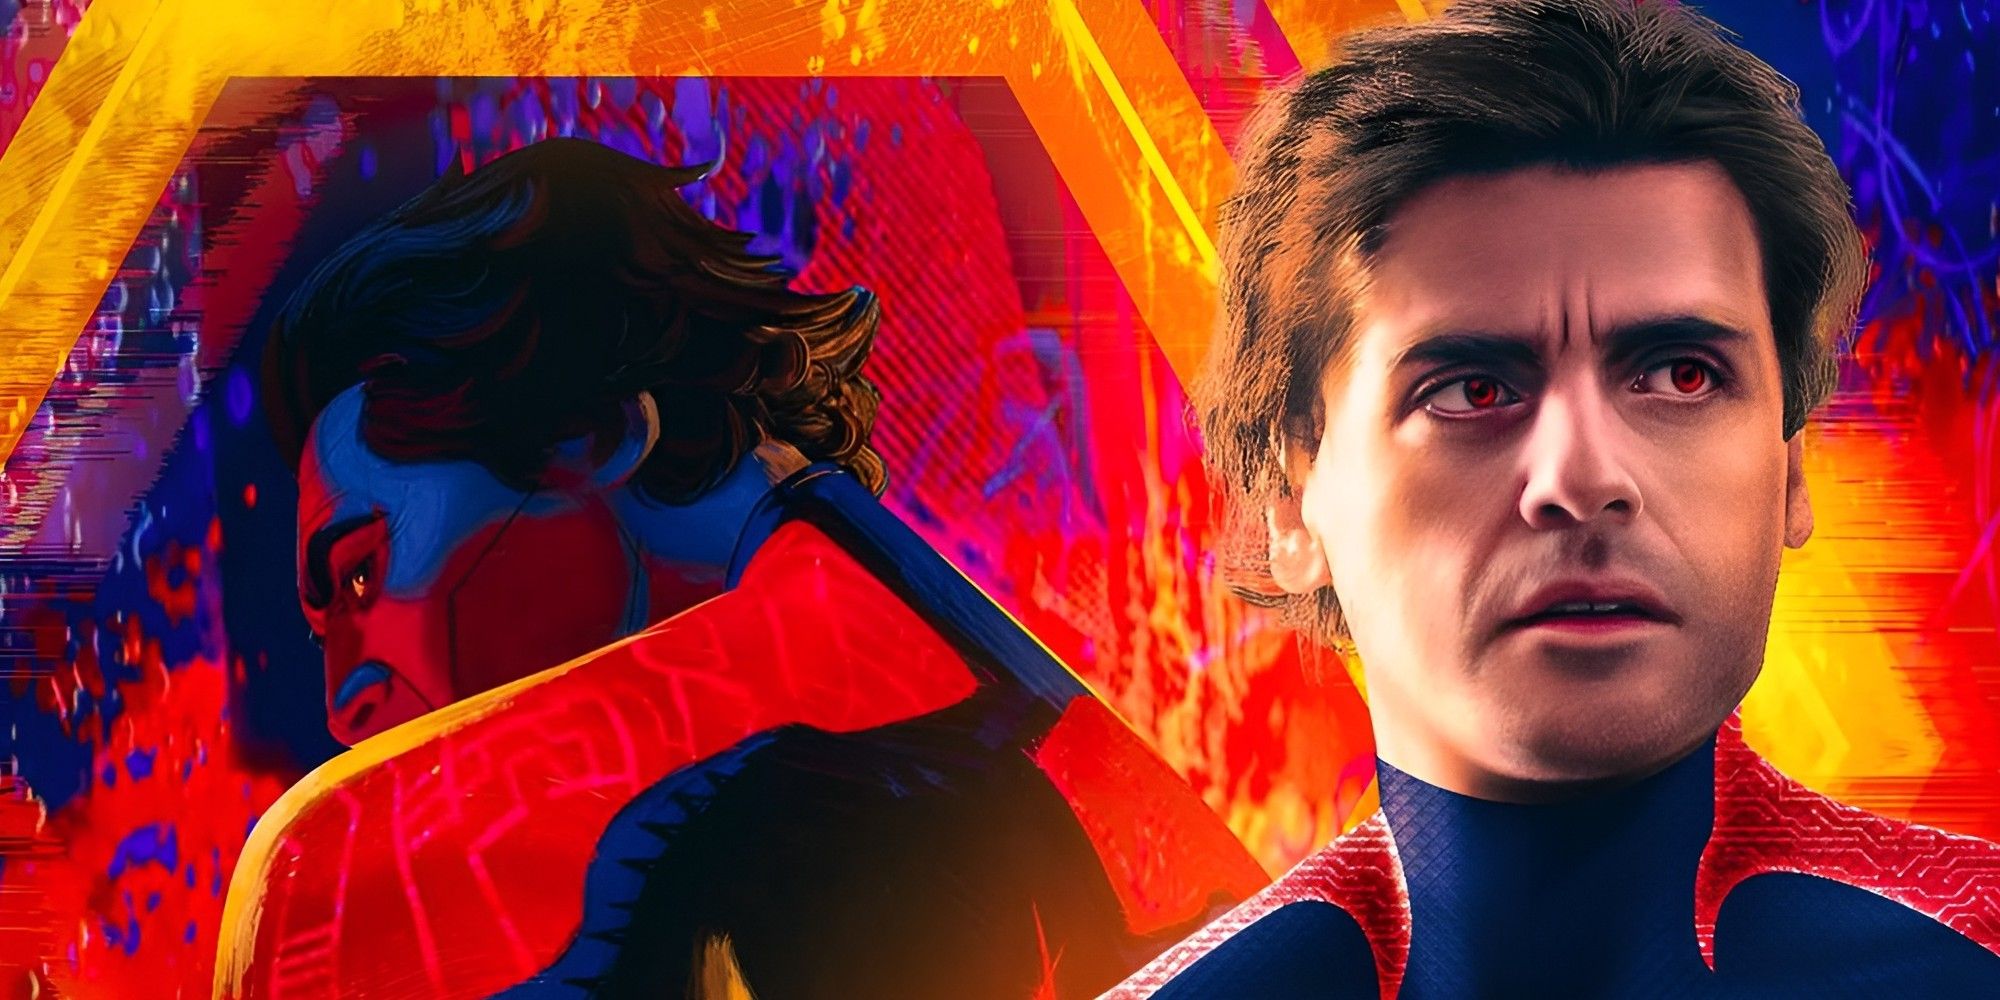 奧斯卡·艾薩克在《穿越蜘蛛俠》粉絲藝術中看起來像真人版《蜘蛛俠 2099》